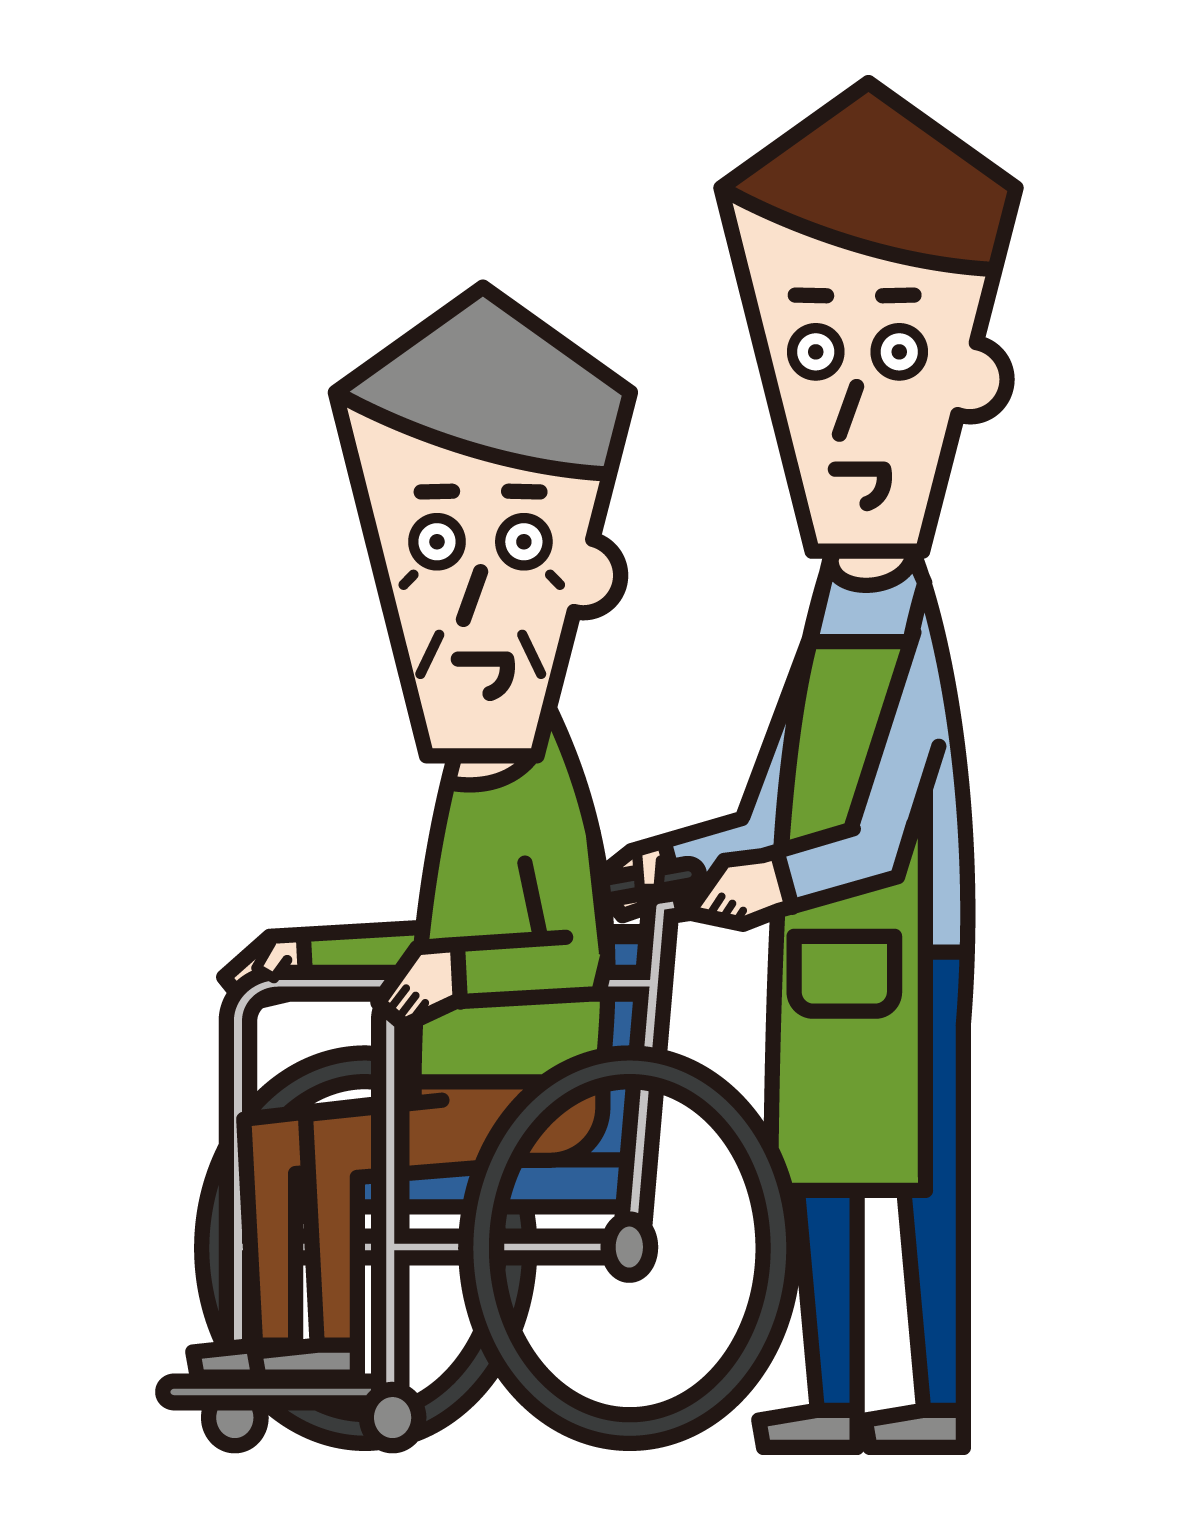 車椅子に乗っている人（おじいさん）と押す訪問介護員（男性）のイラスト